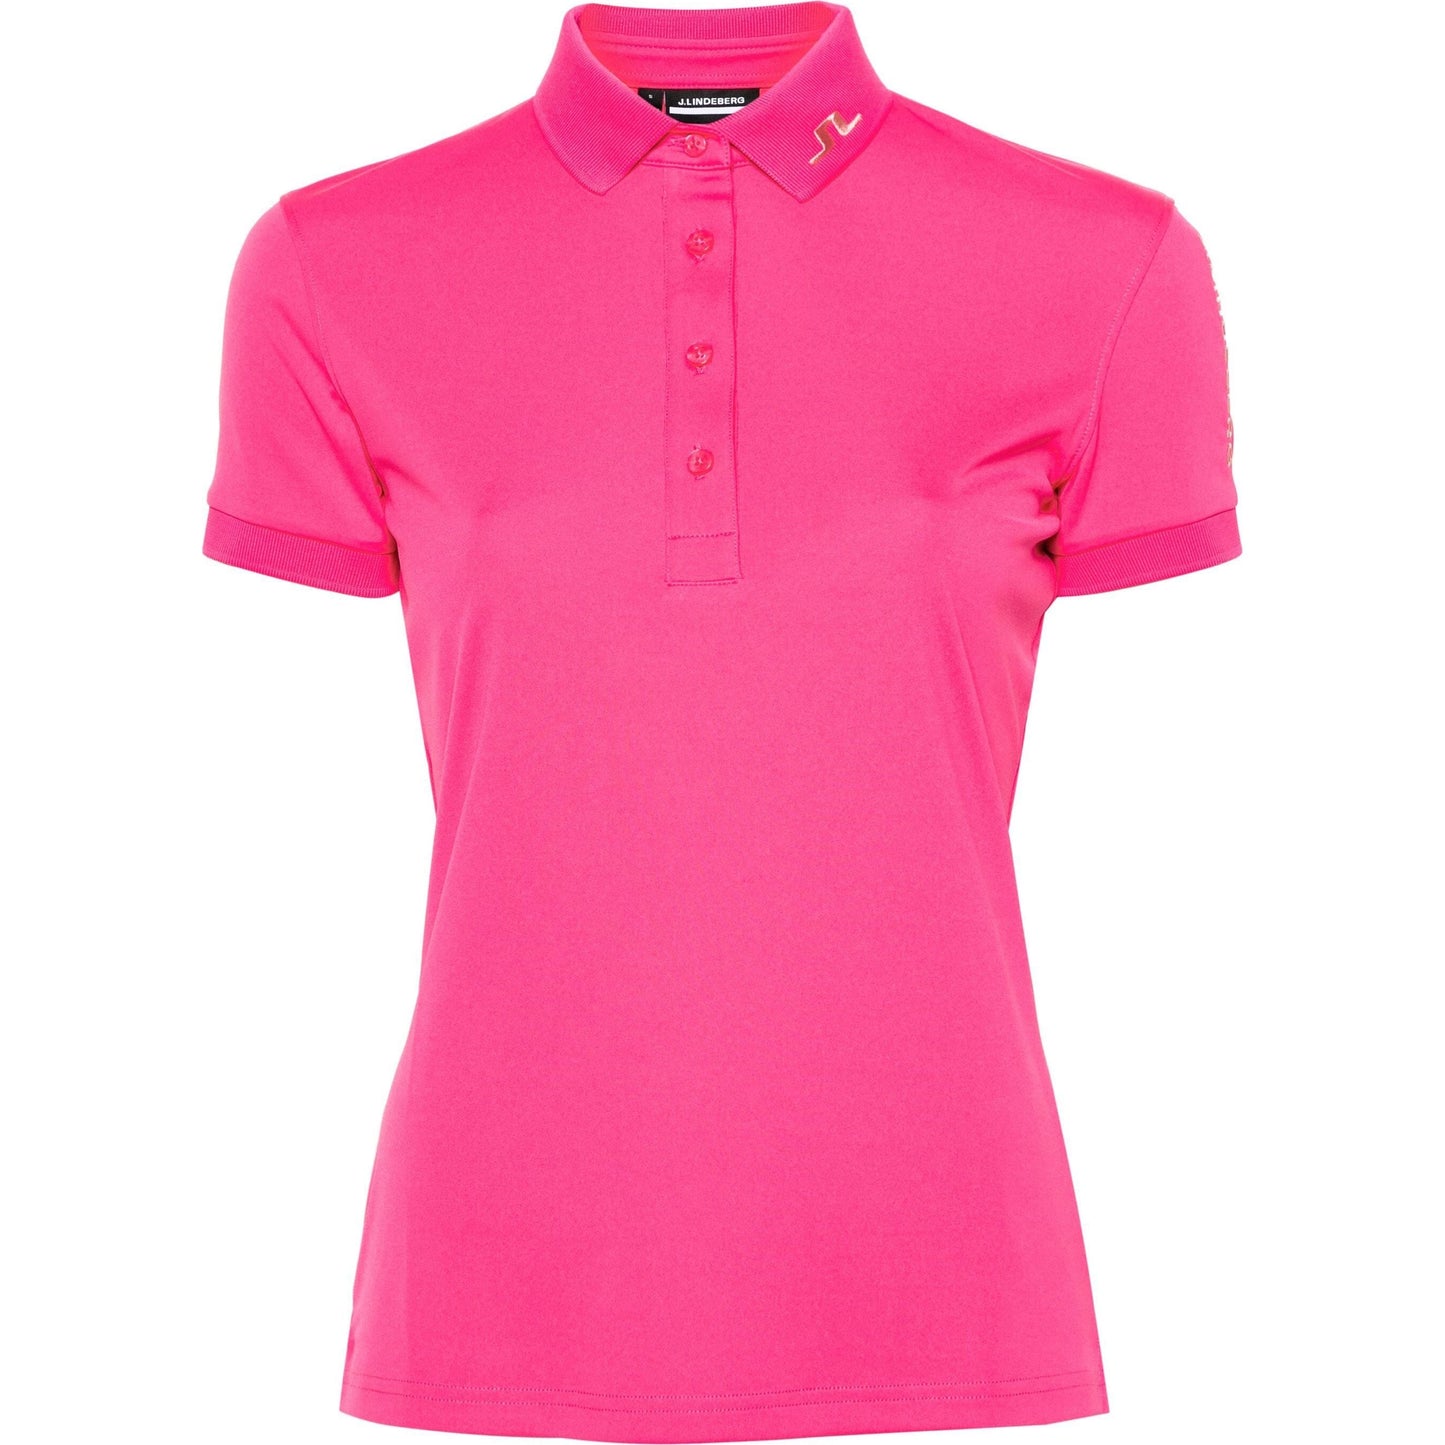 J.LINDEBERG Polo marškinėliai moterims, rožinė, Tour tech polo